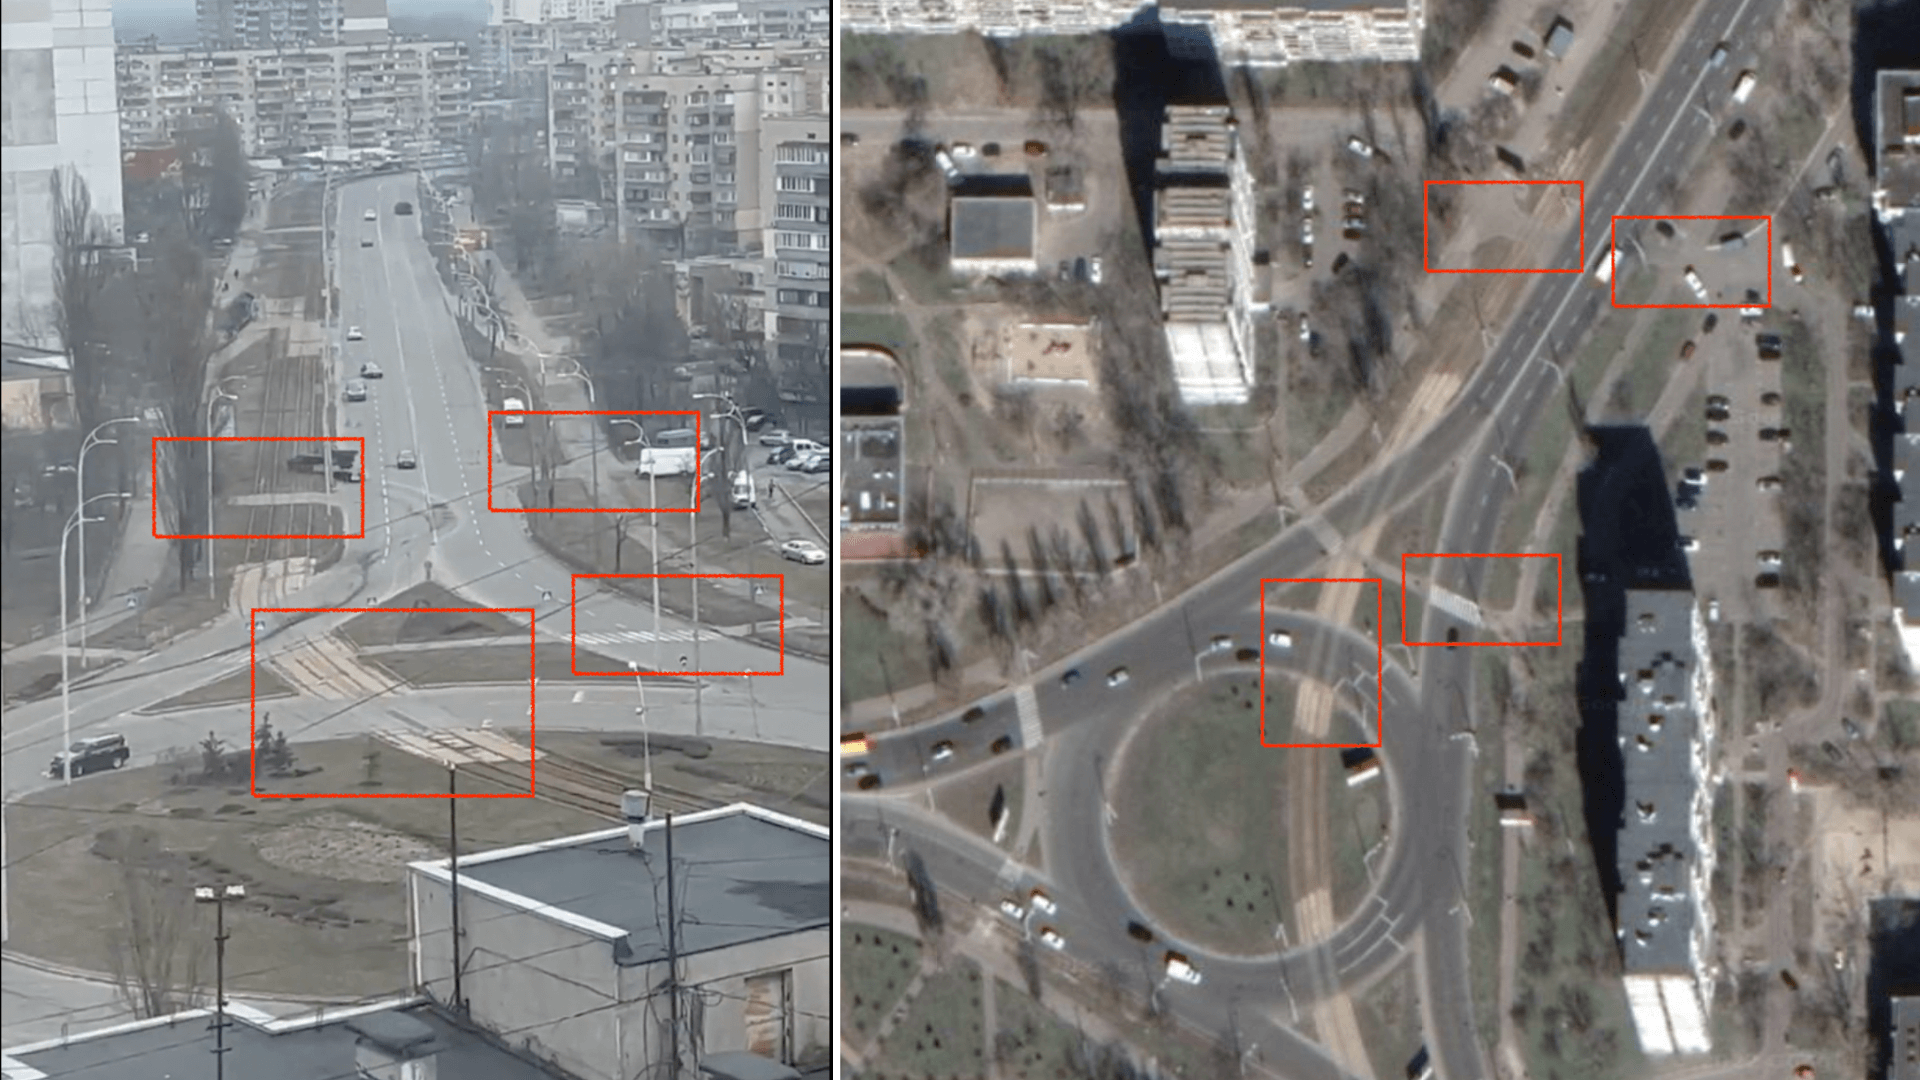 Anhand eines markanten Kreisverkehrs und dem Verlauf von Straßenbahnschienen und Fußgängerüberwegen konnten wir verifizieren, dass die Aufnahmen tatsächlich in Kiew entstanden sind